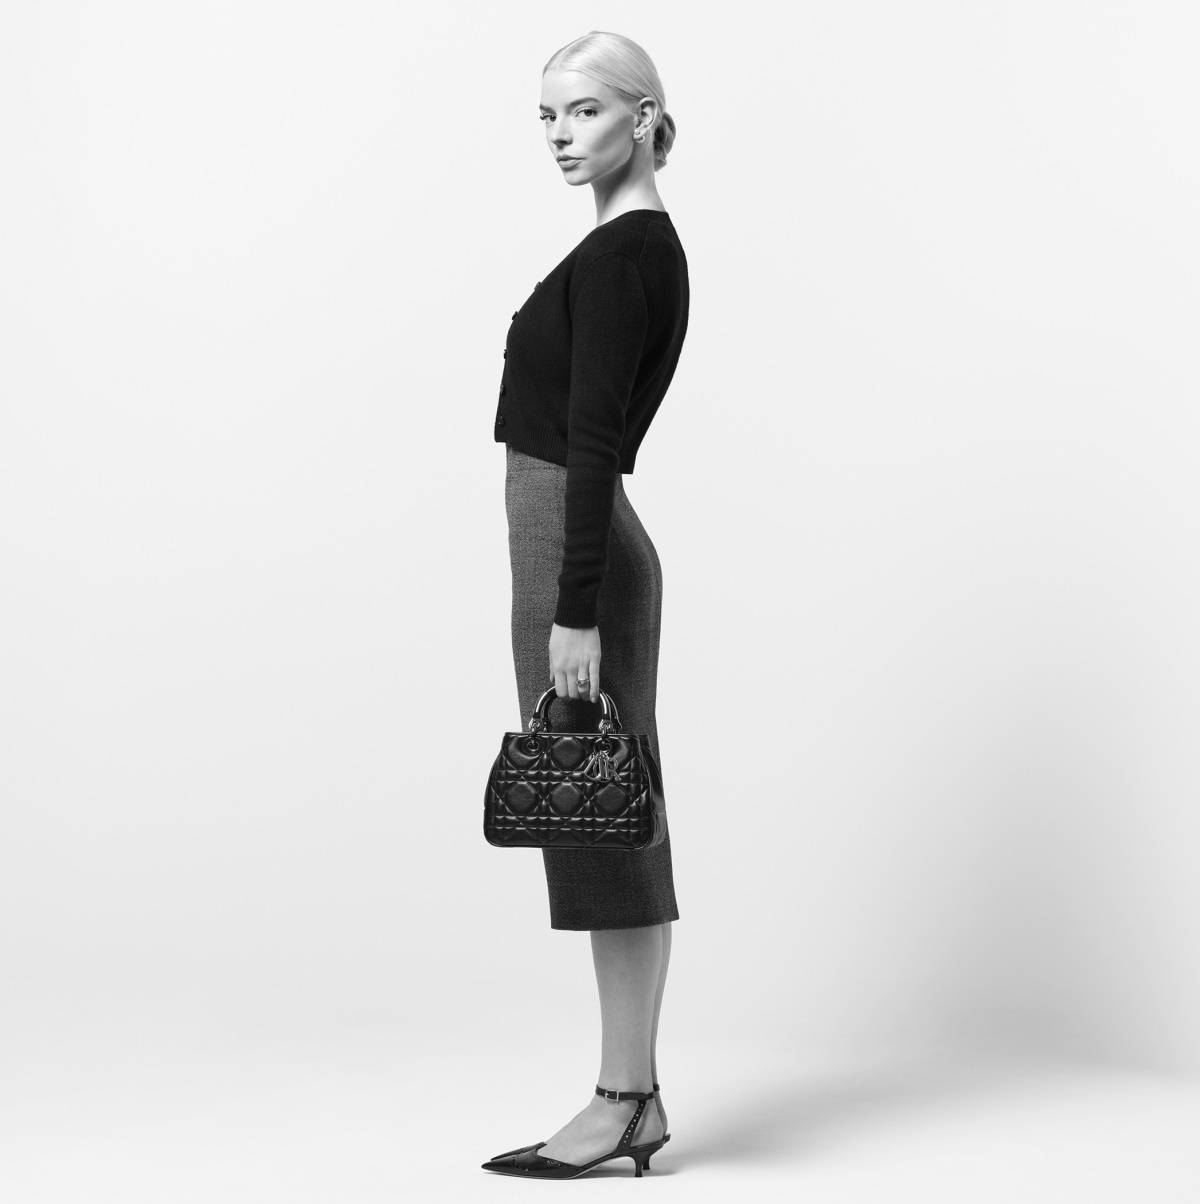 Anya Taylor-Joy w kampanii Diora promującej model The Lady 95.22 nową wersję ulubionej torebki księżnej Diany